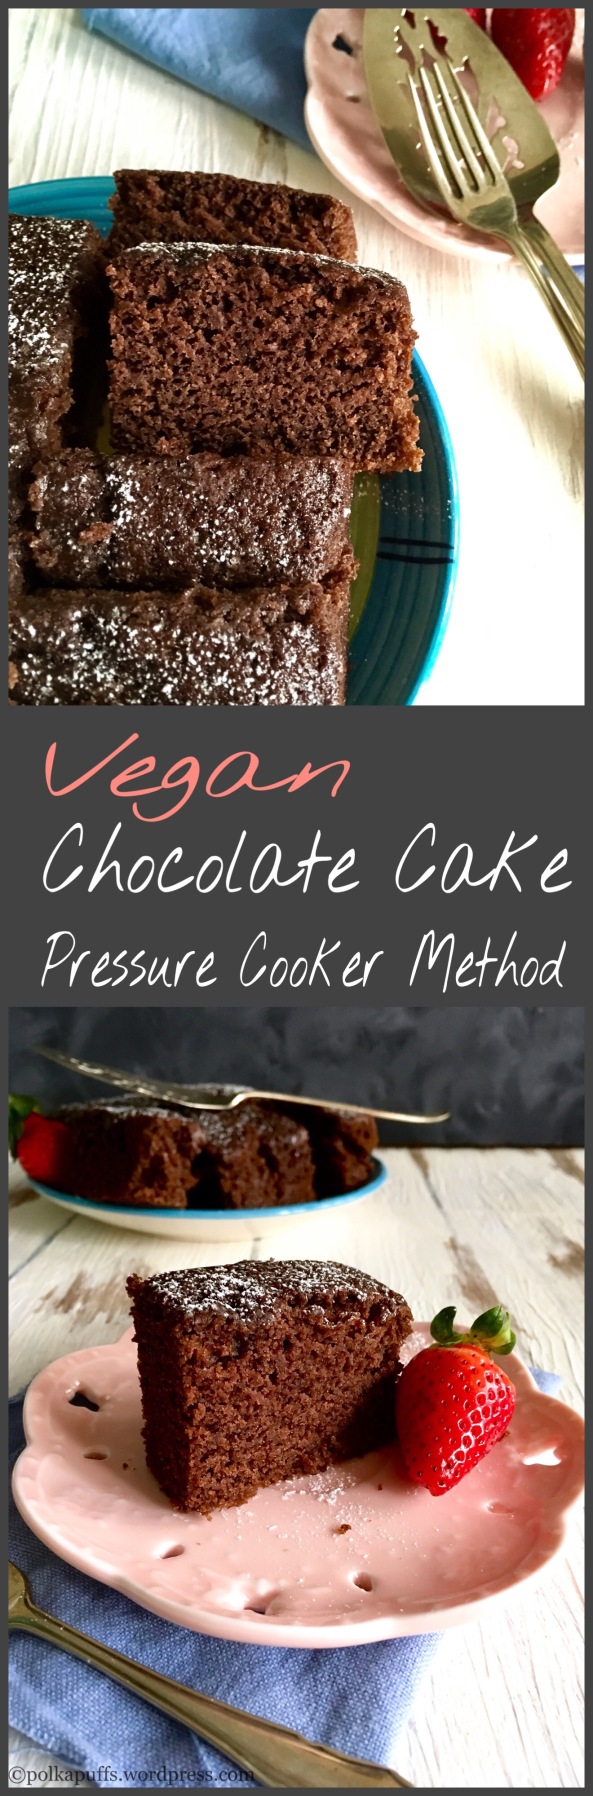 Vegan Chocolate Cake in pressure cooker